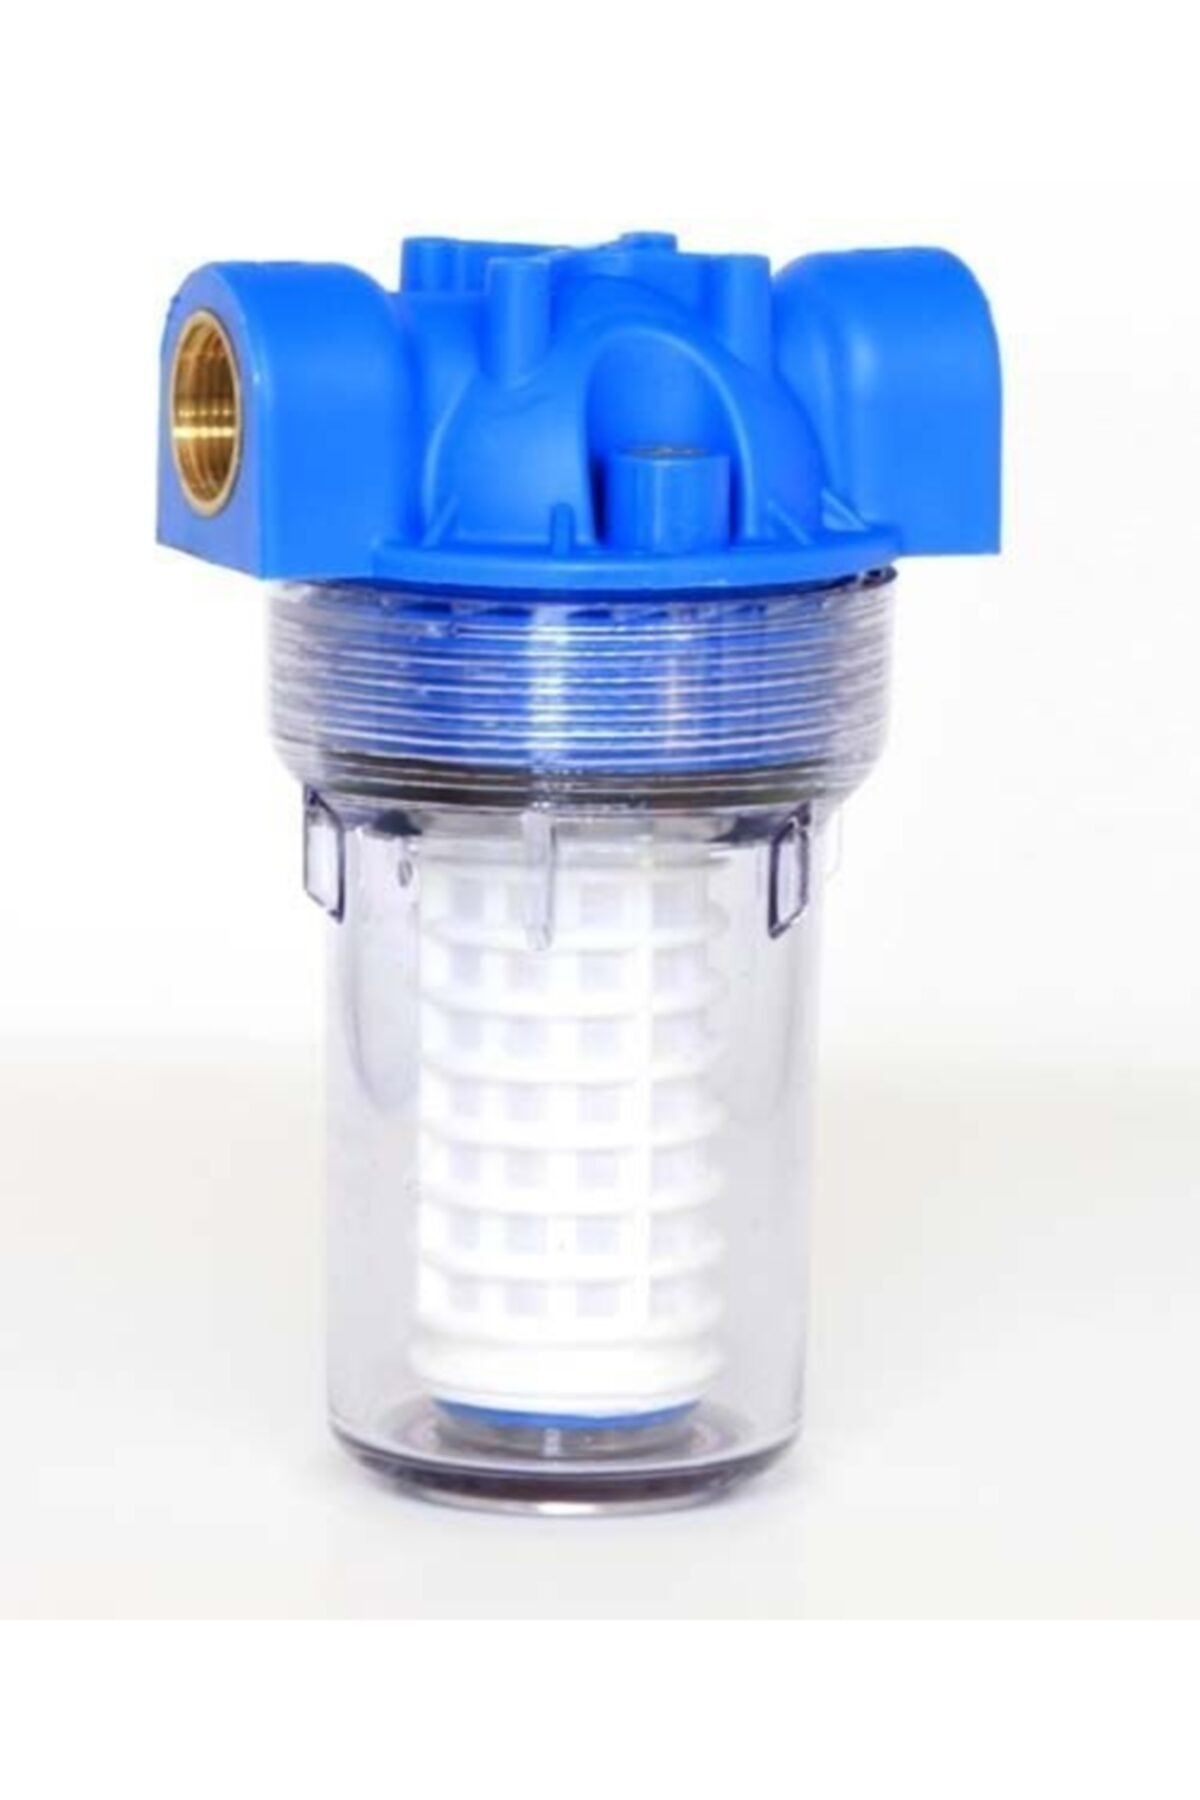 Aquafer 534 Pm4 Yıkanabilir Paslanmaz Mazot Süzme Filtresi 3/4 Inc 100 Micron Filtre Kabı